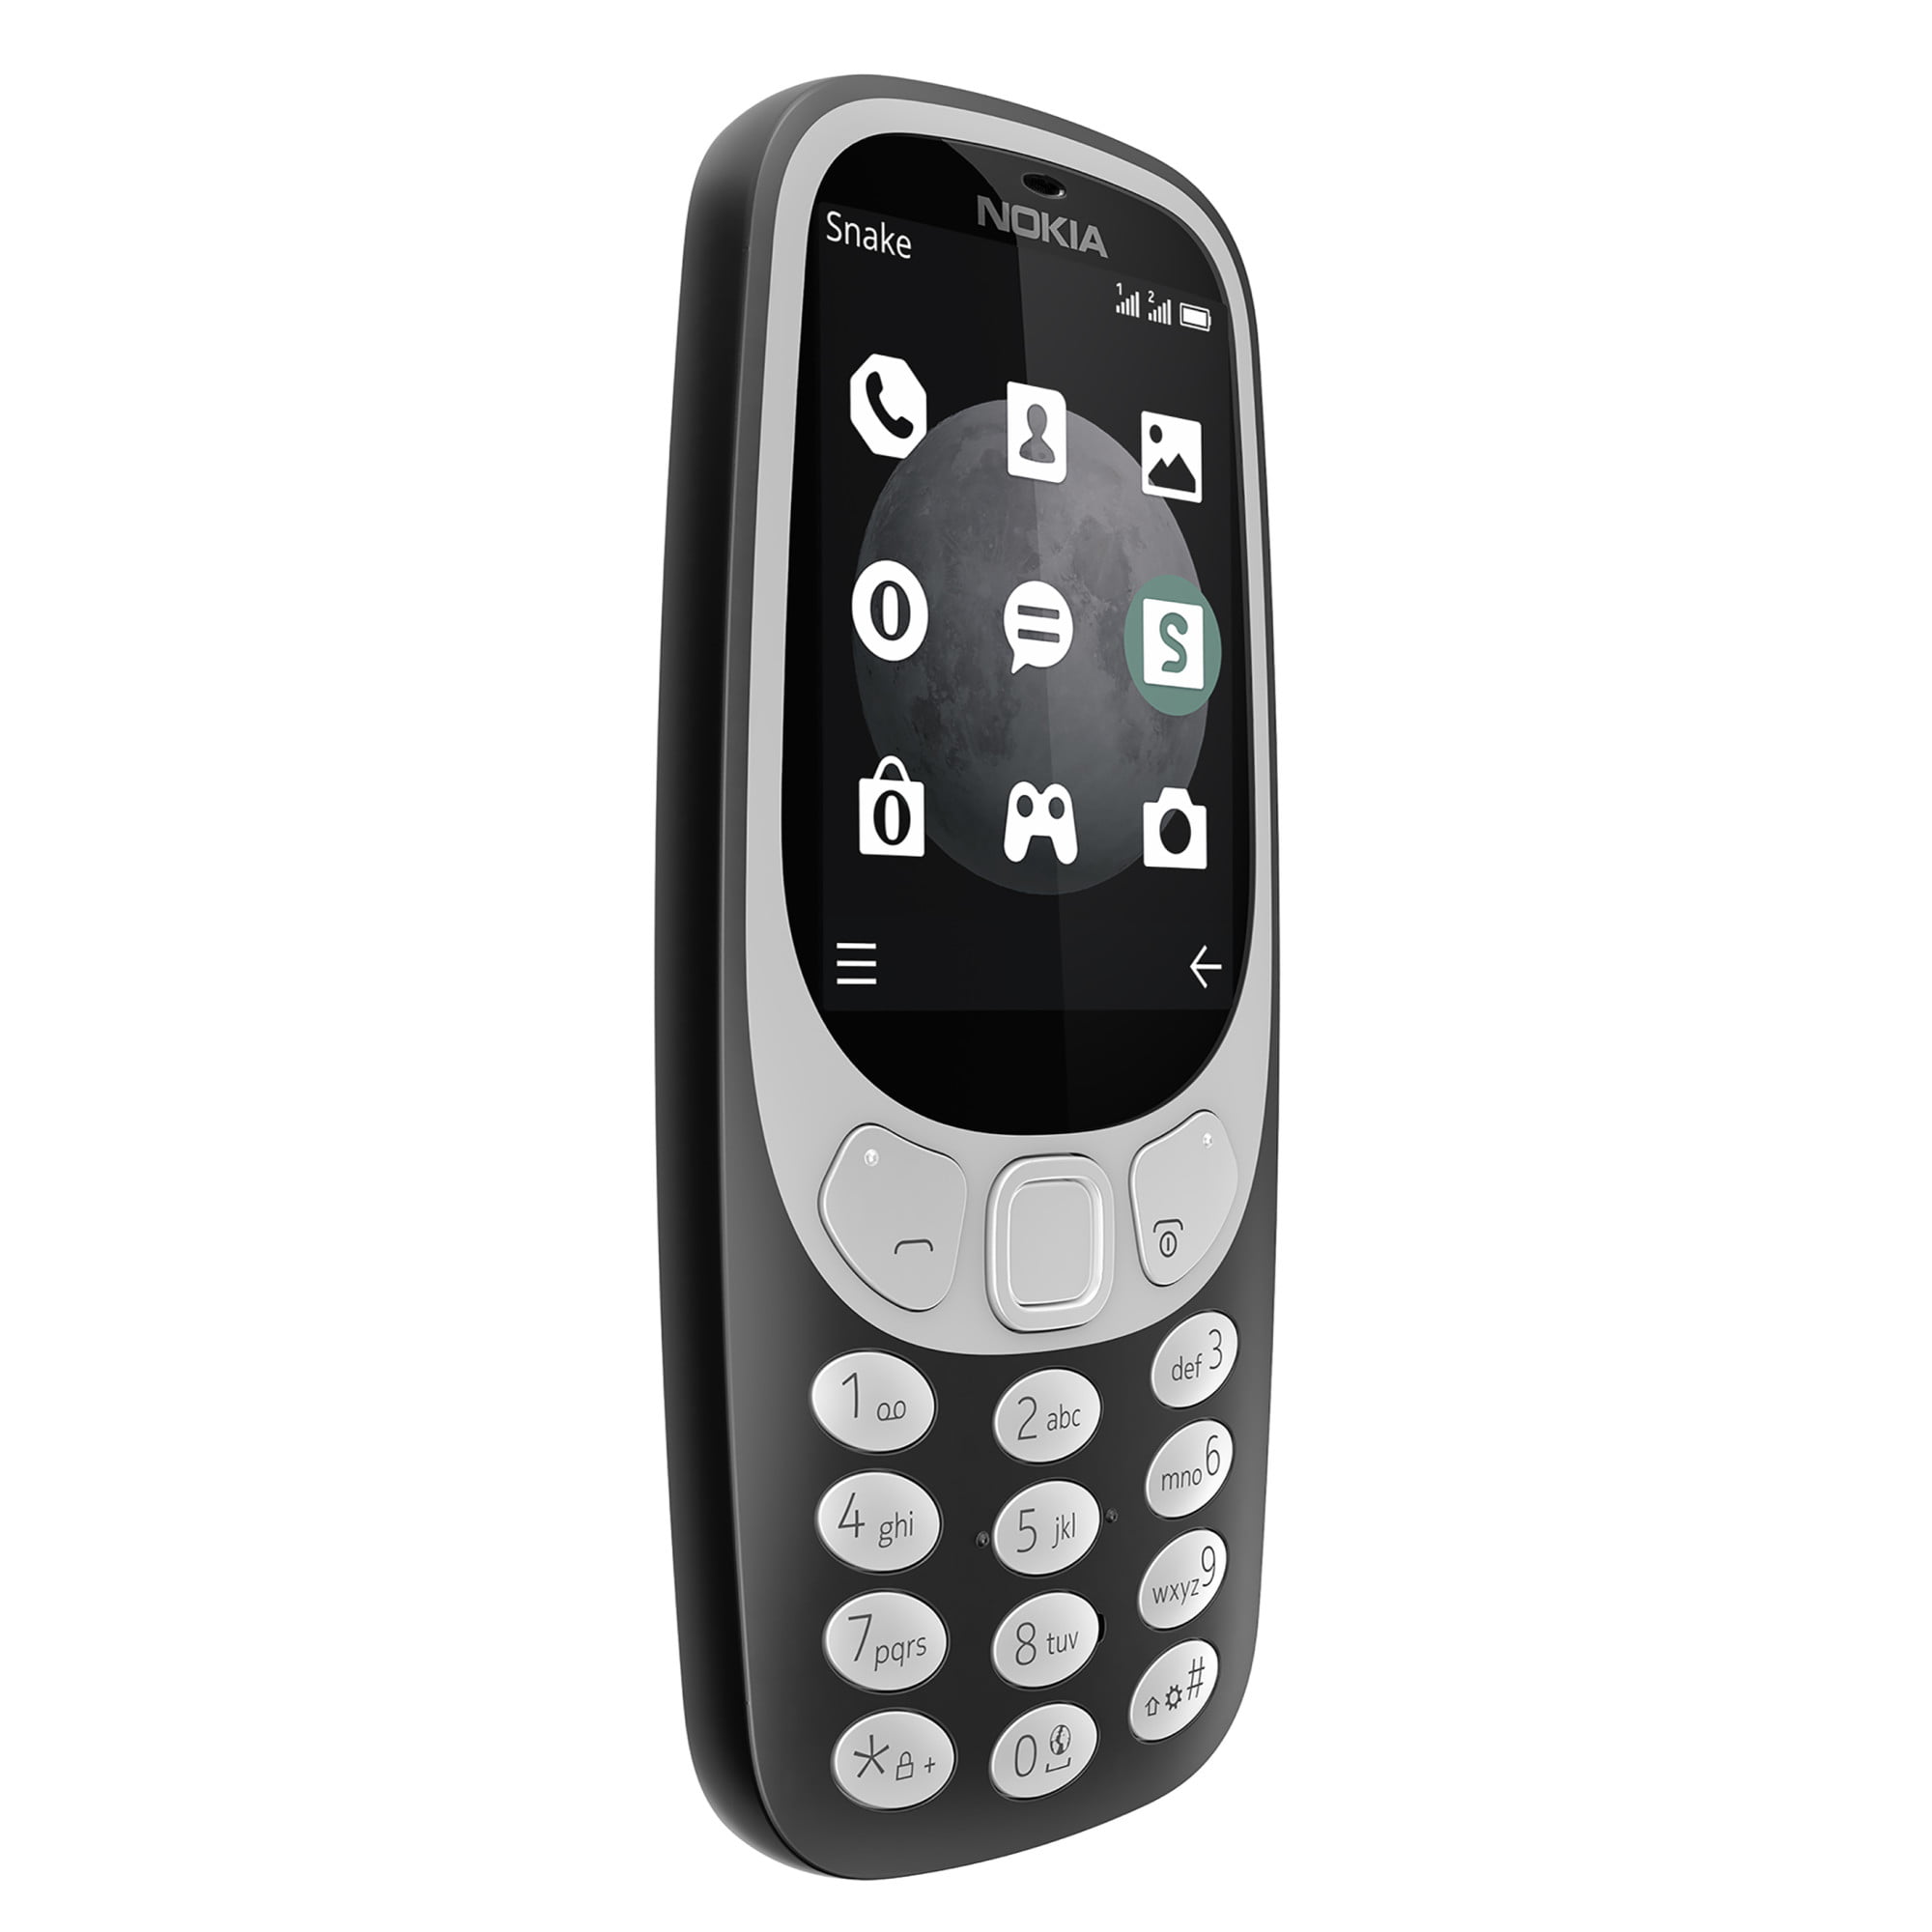 Atlas Gå glip af Modsigelse Nokia 3310 TA-1036 Unlocked GSM 3G Android Phone - Charcoal - Walmart.com